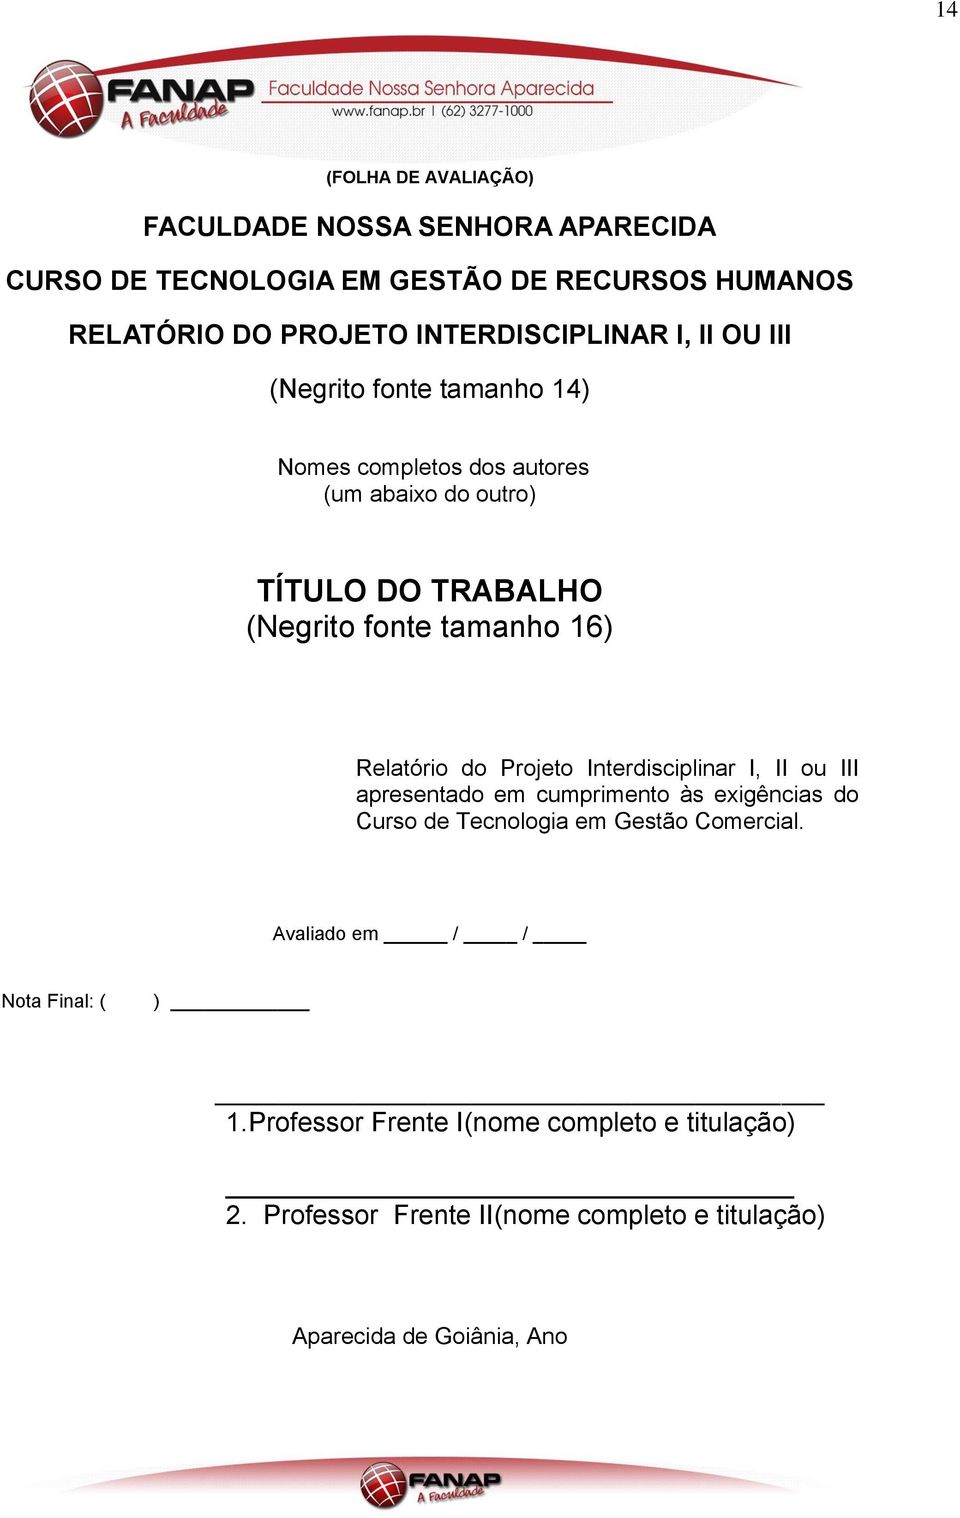 tamanho 16) Relatório do Projeto Interdisciplinar I, II ou III apresentado em cumprimento às exigências do Curso de Tecnologia em Gestão